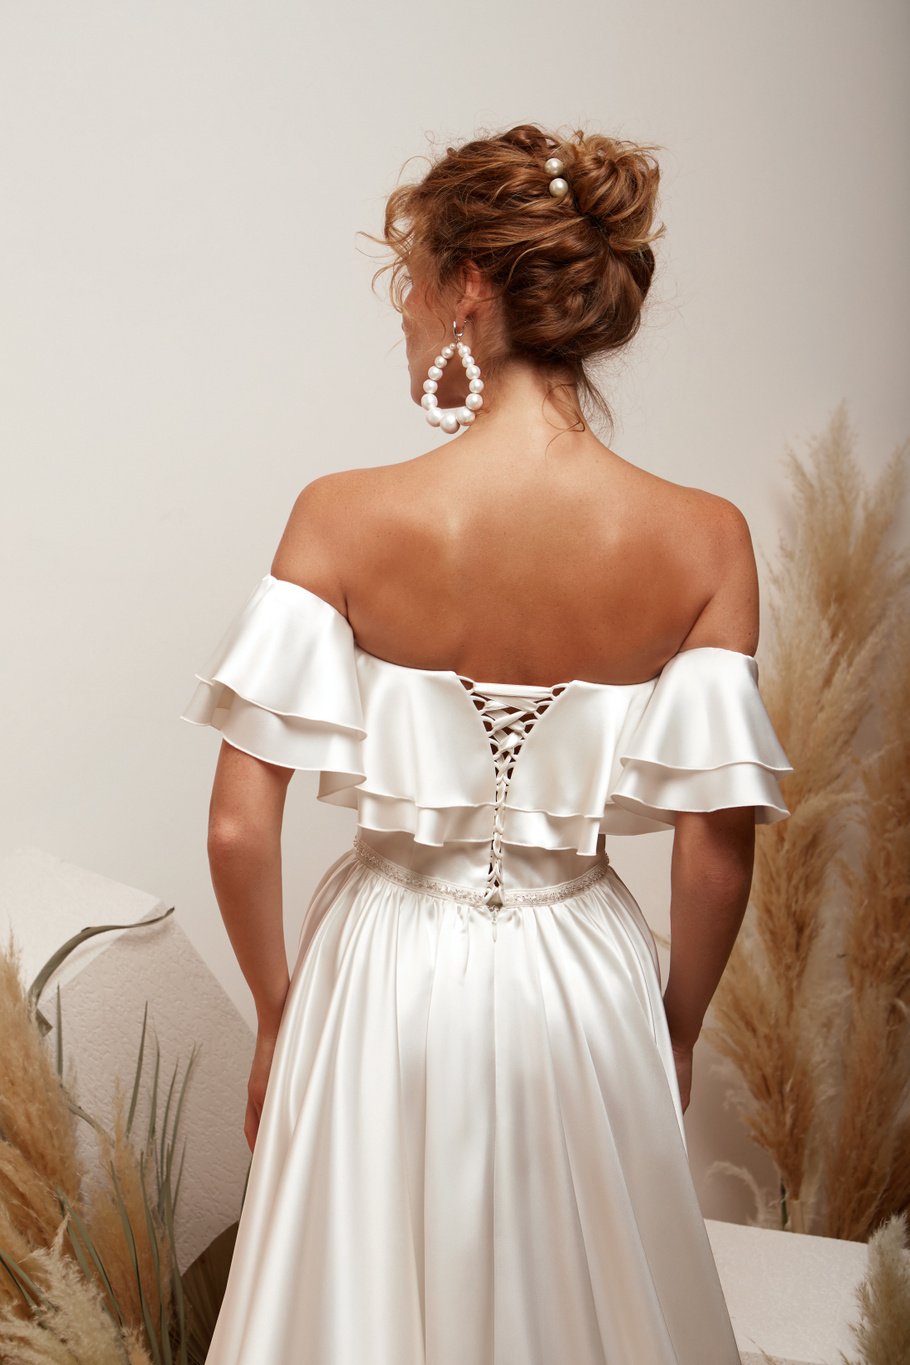 Купить свадебное платье «Магнолия» Мэрри Марк из коллекции 2020 года в Нижнем Новгороде